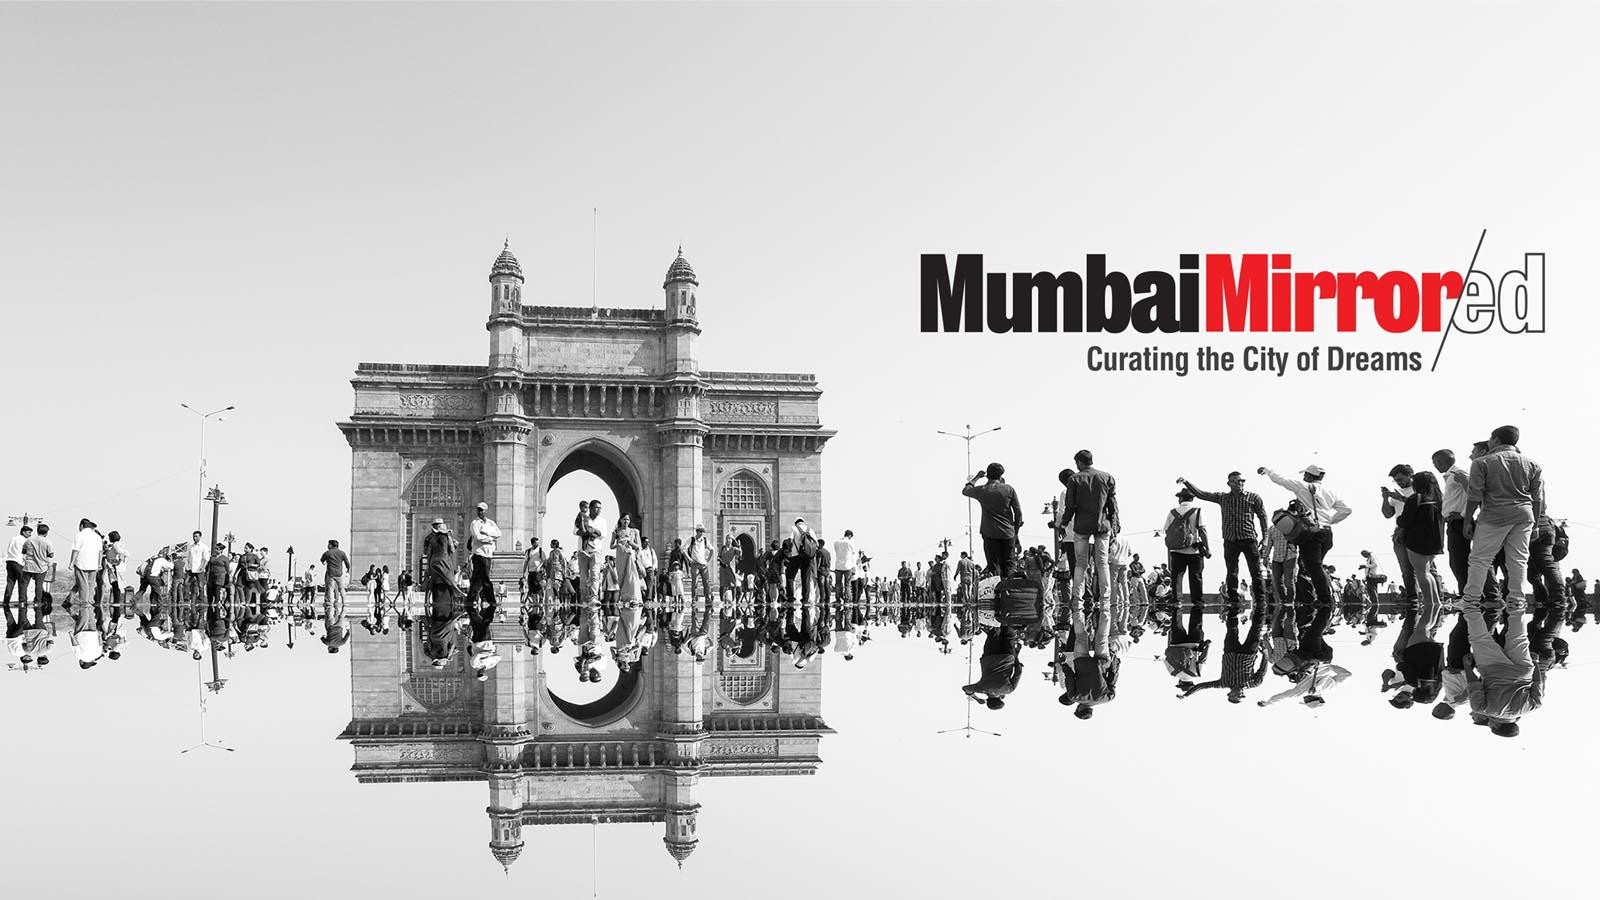 Mumbai Mirrored